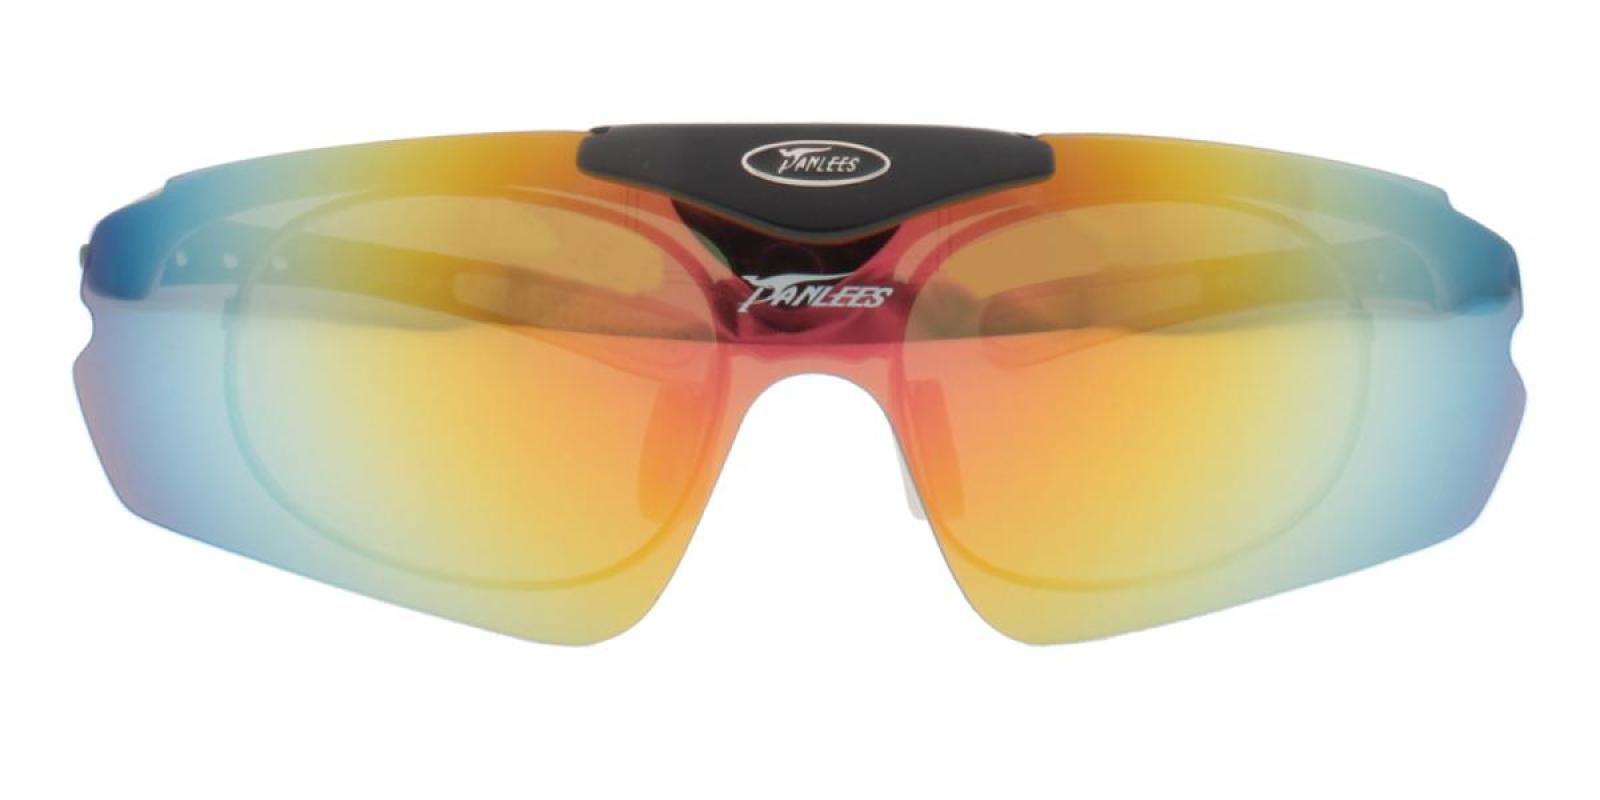 Vigor-White-Square-Plastic-SportsGlasses-detail